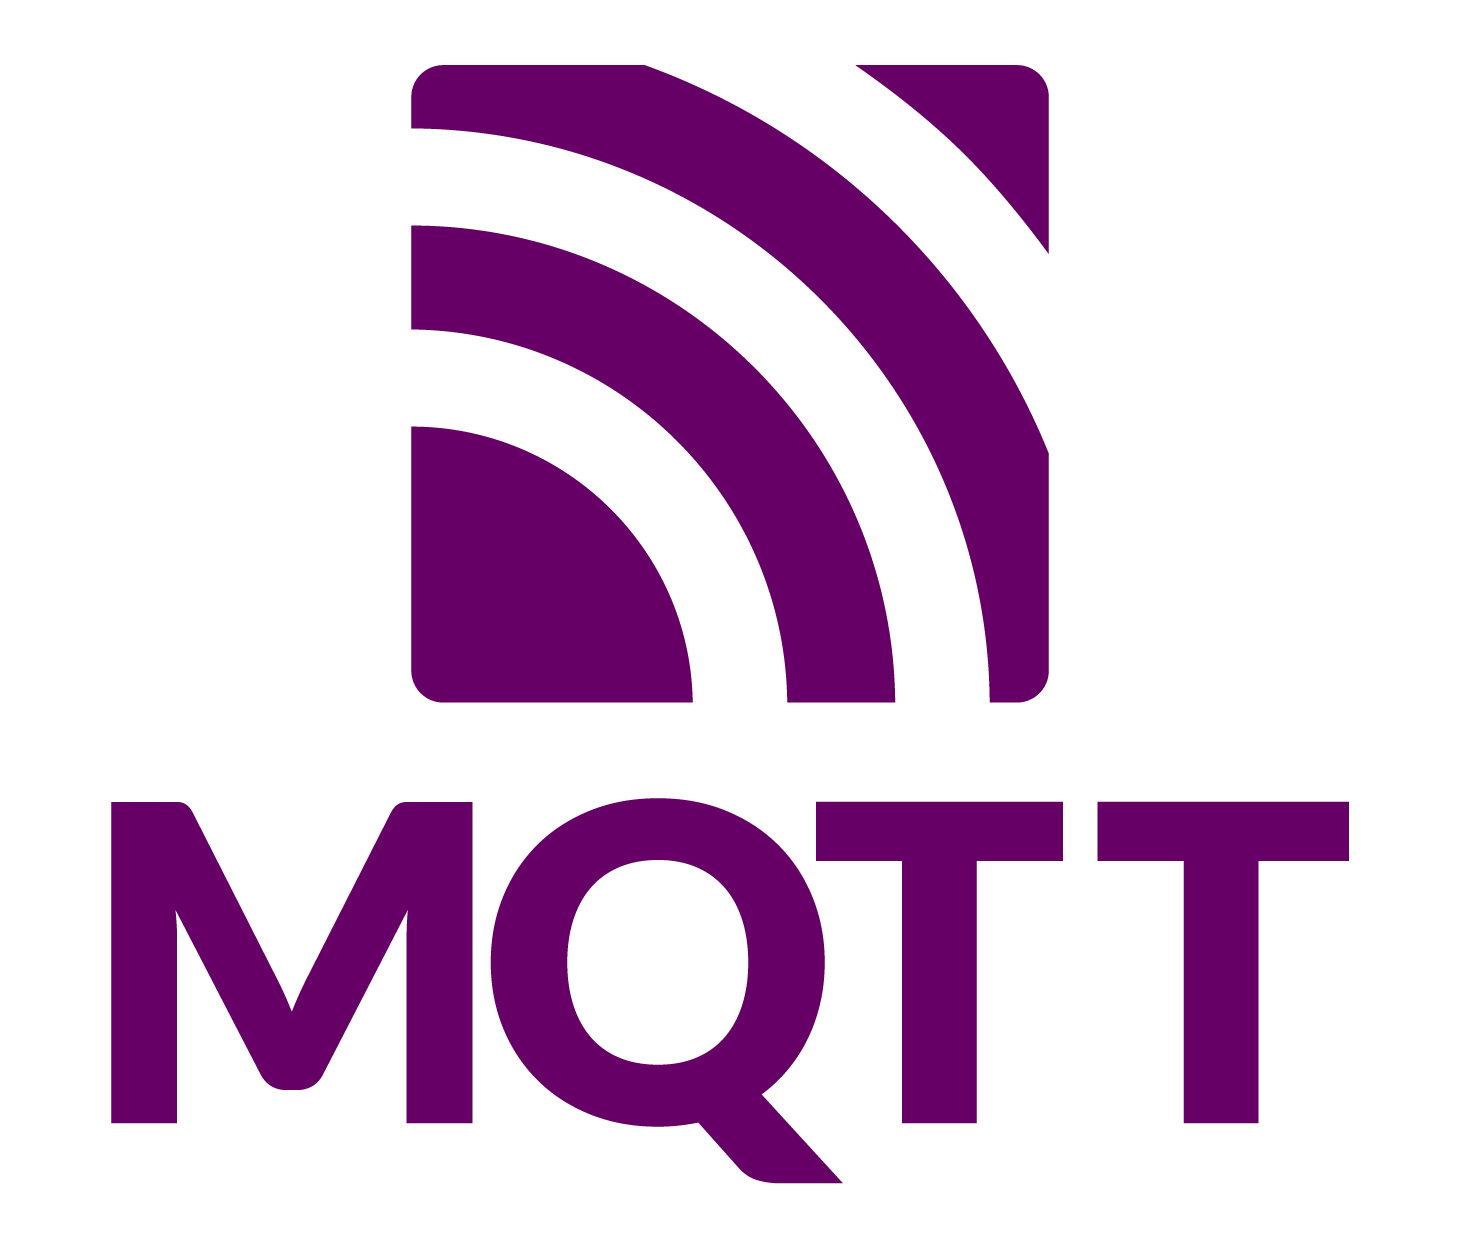 MQTT Specification